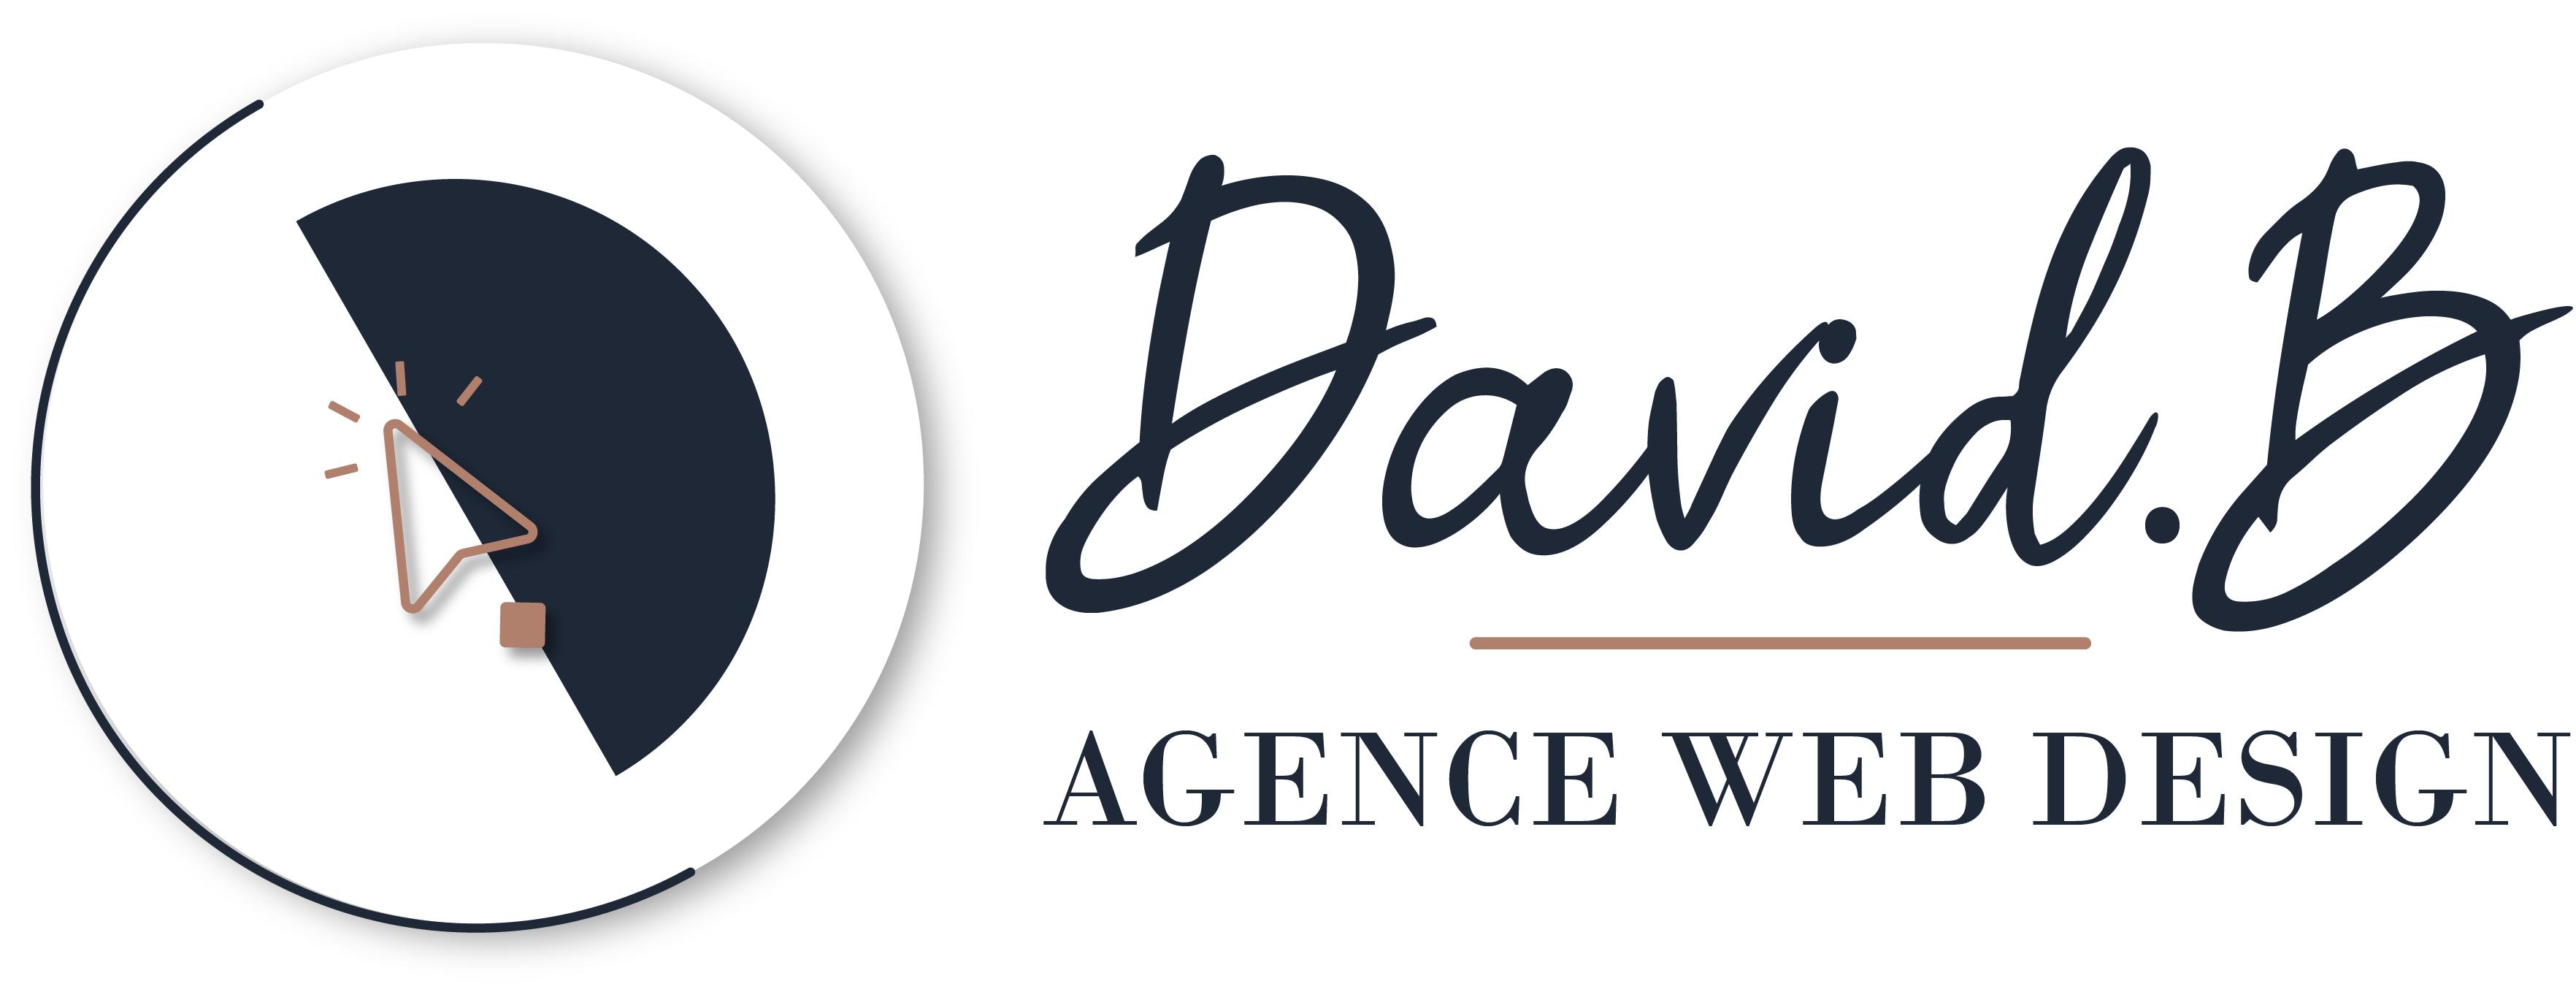 logo agence webdesigner davidb libourne bordeaux